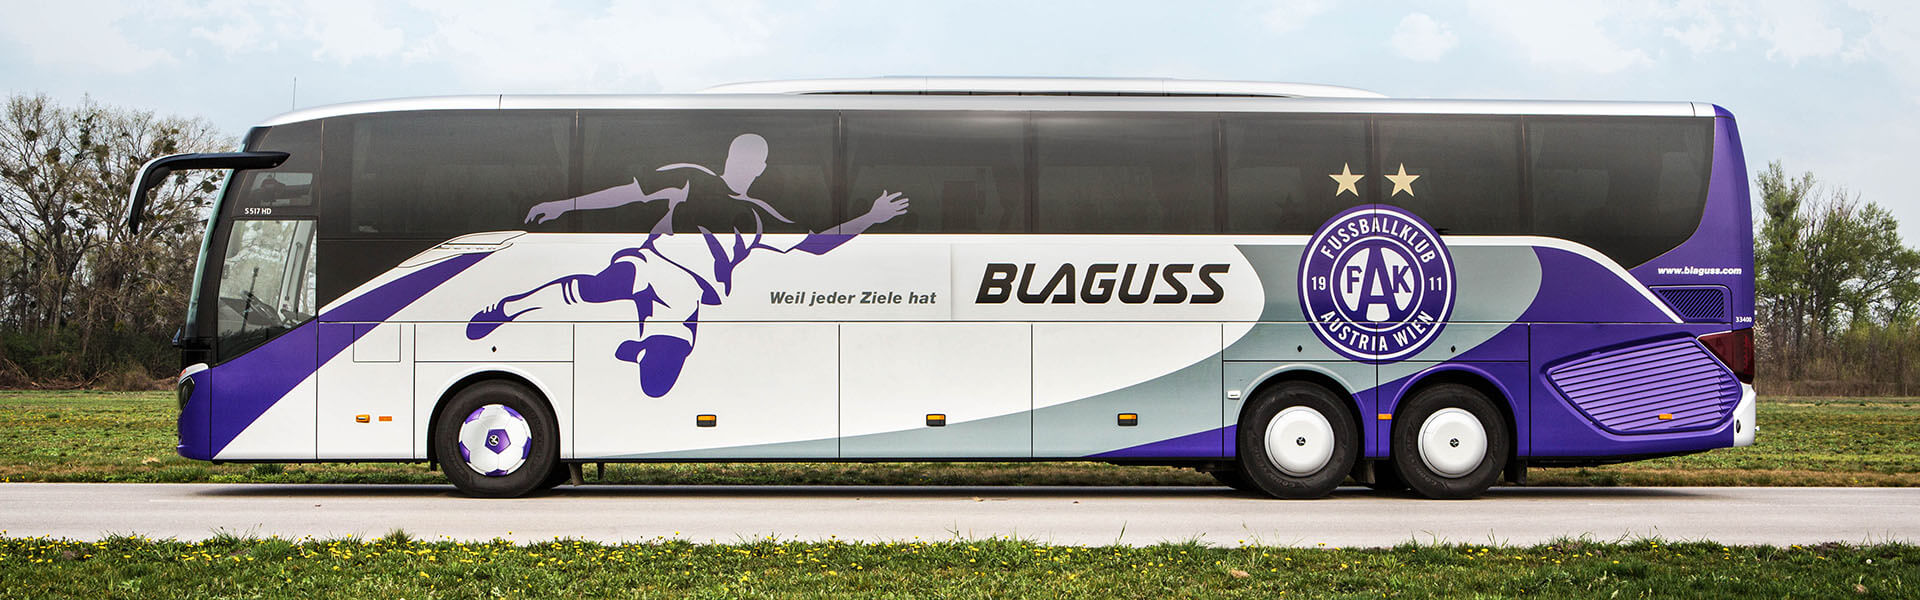 Blaguss Bus Austria Wien